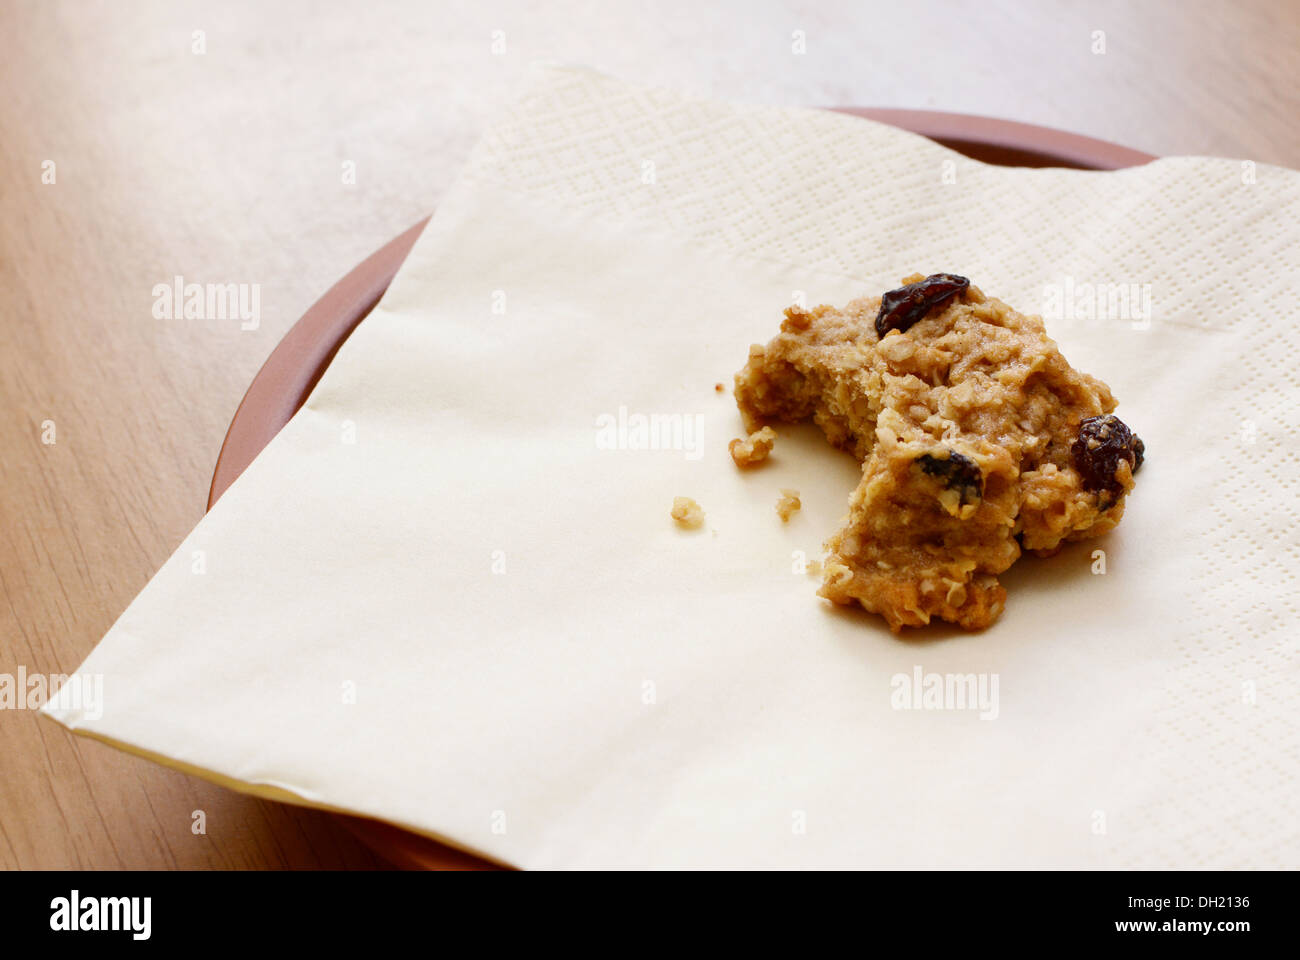 De délicieux biscuits à l'avoine et aux raisins avec une morsure prises Banque D'Images